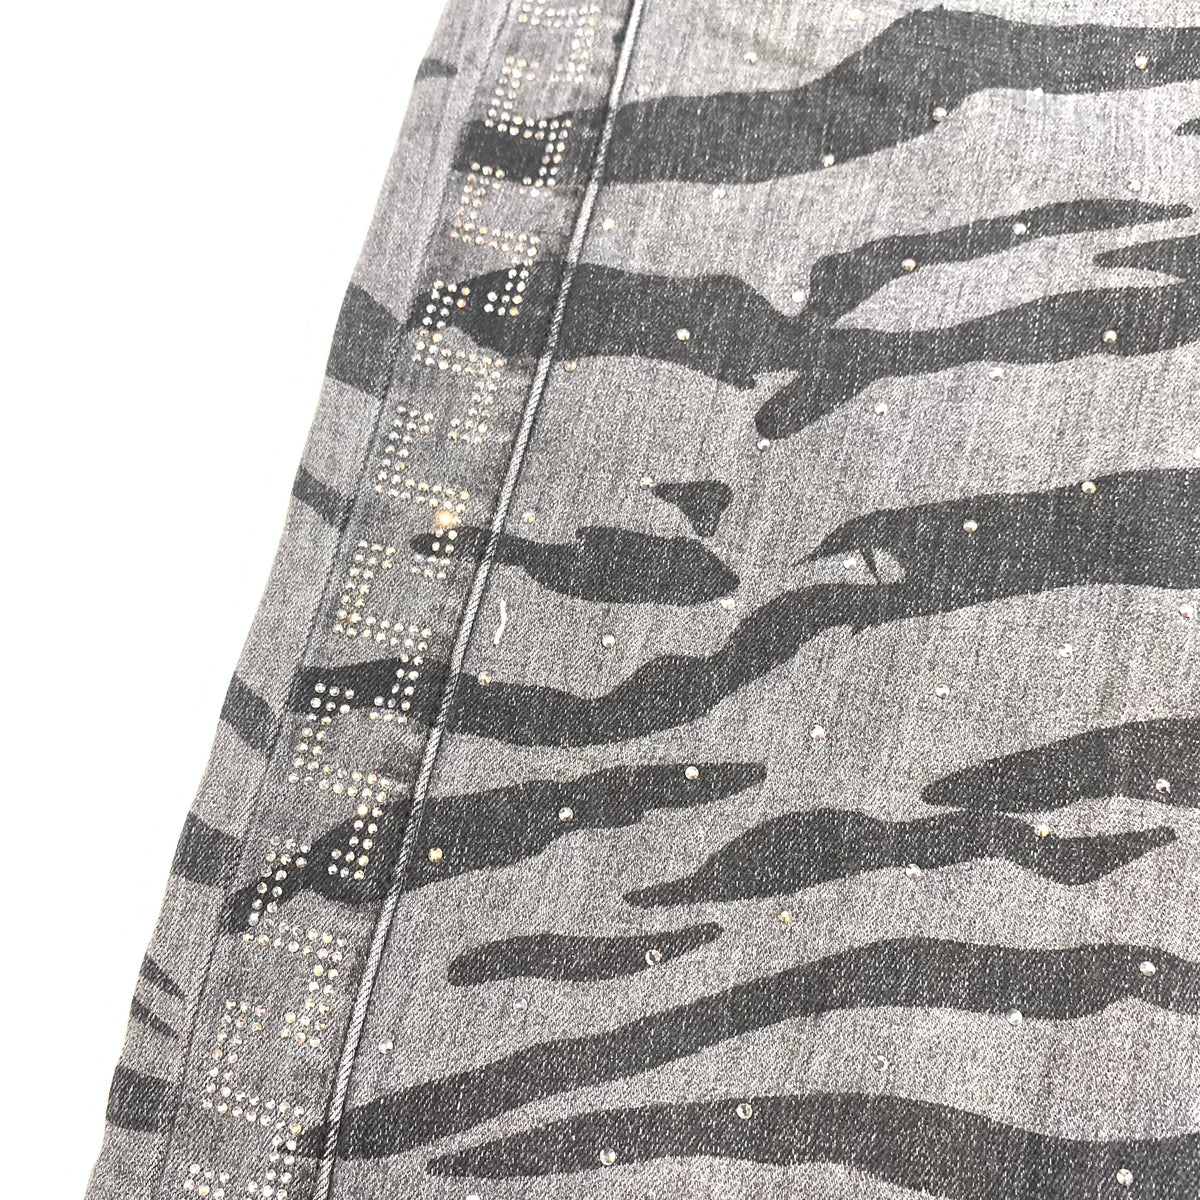 Barocco Men's Charcoal Crystal Key Denim Jeans - Dudes Boutique